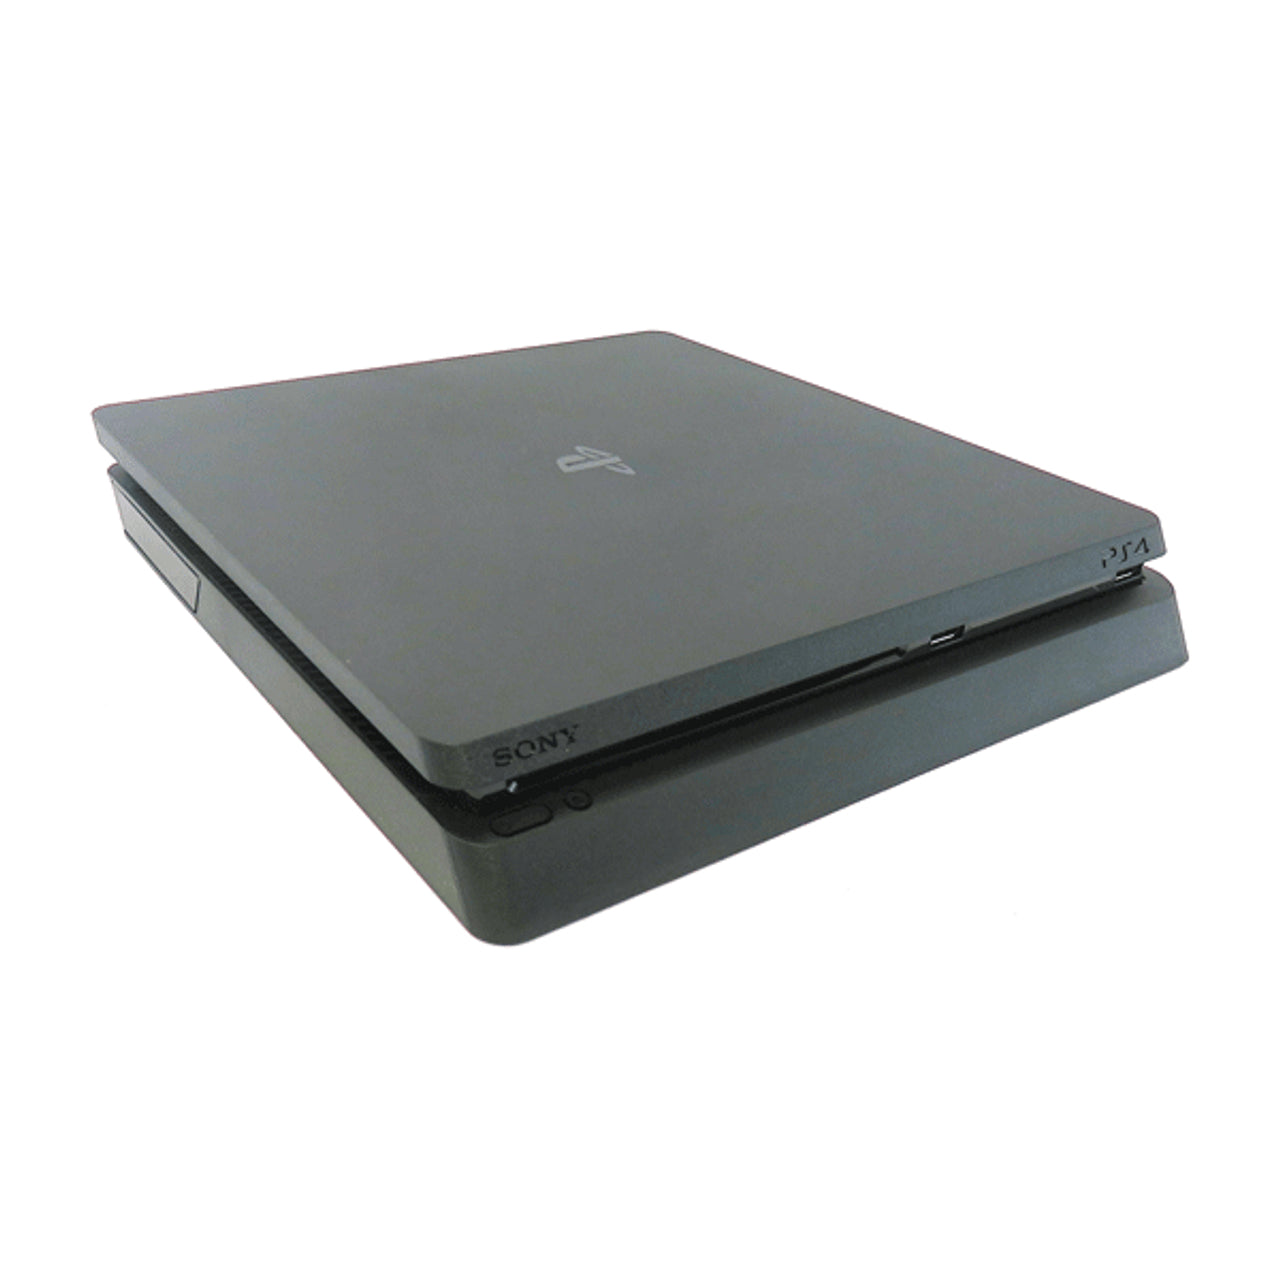 Playstation 4 Slim 500GB Console - Black